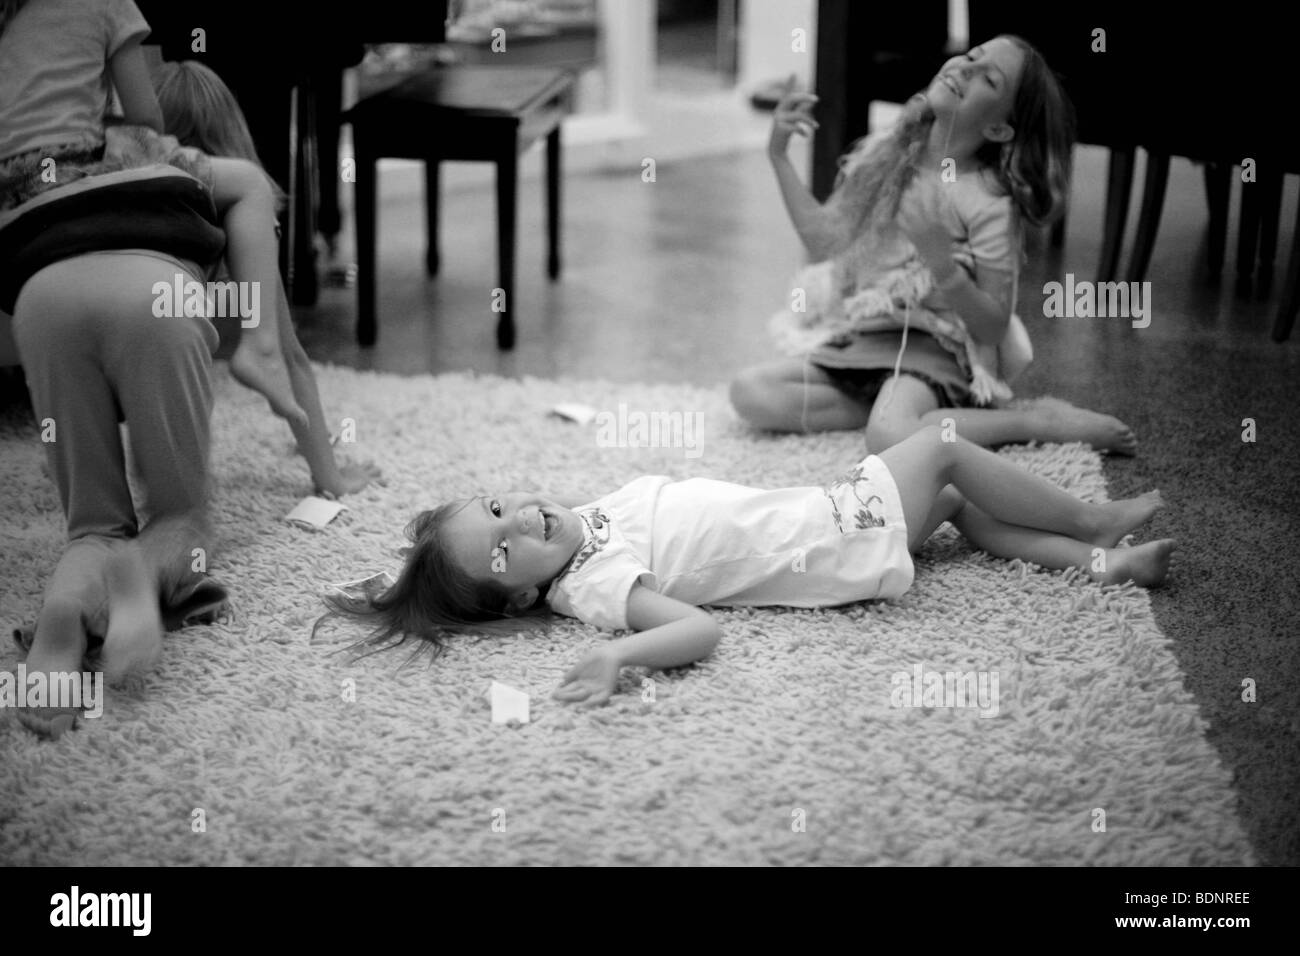 Schwarz / weiß Bild von Mädchen spielen auf Teppich im Wohnzimmer Stockfoto